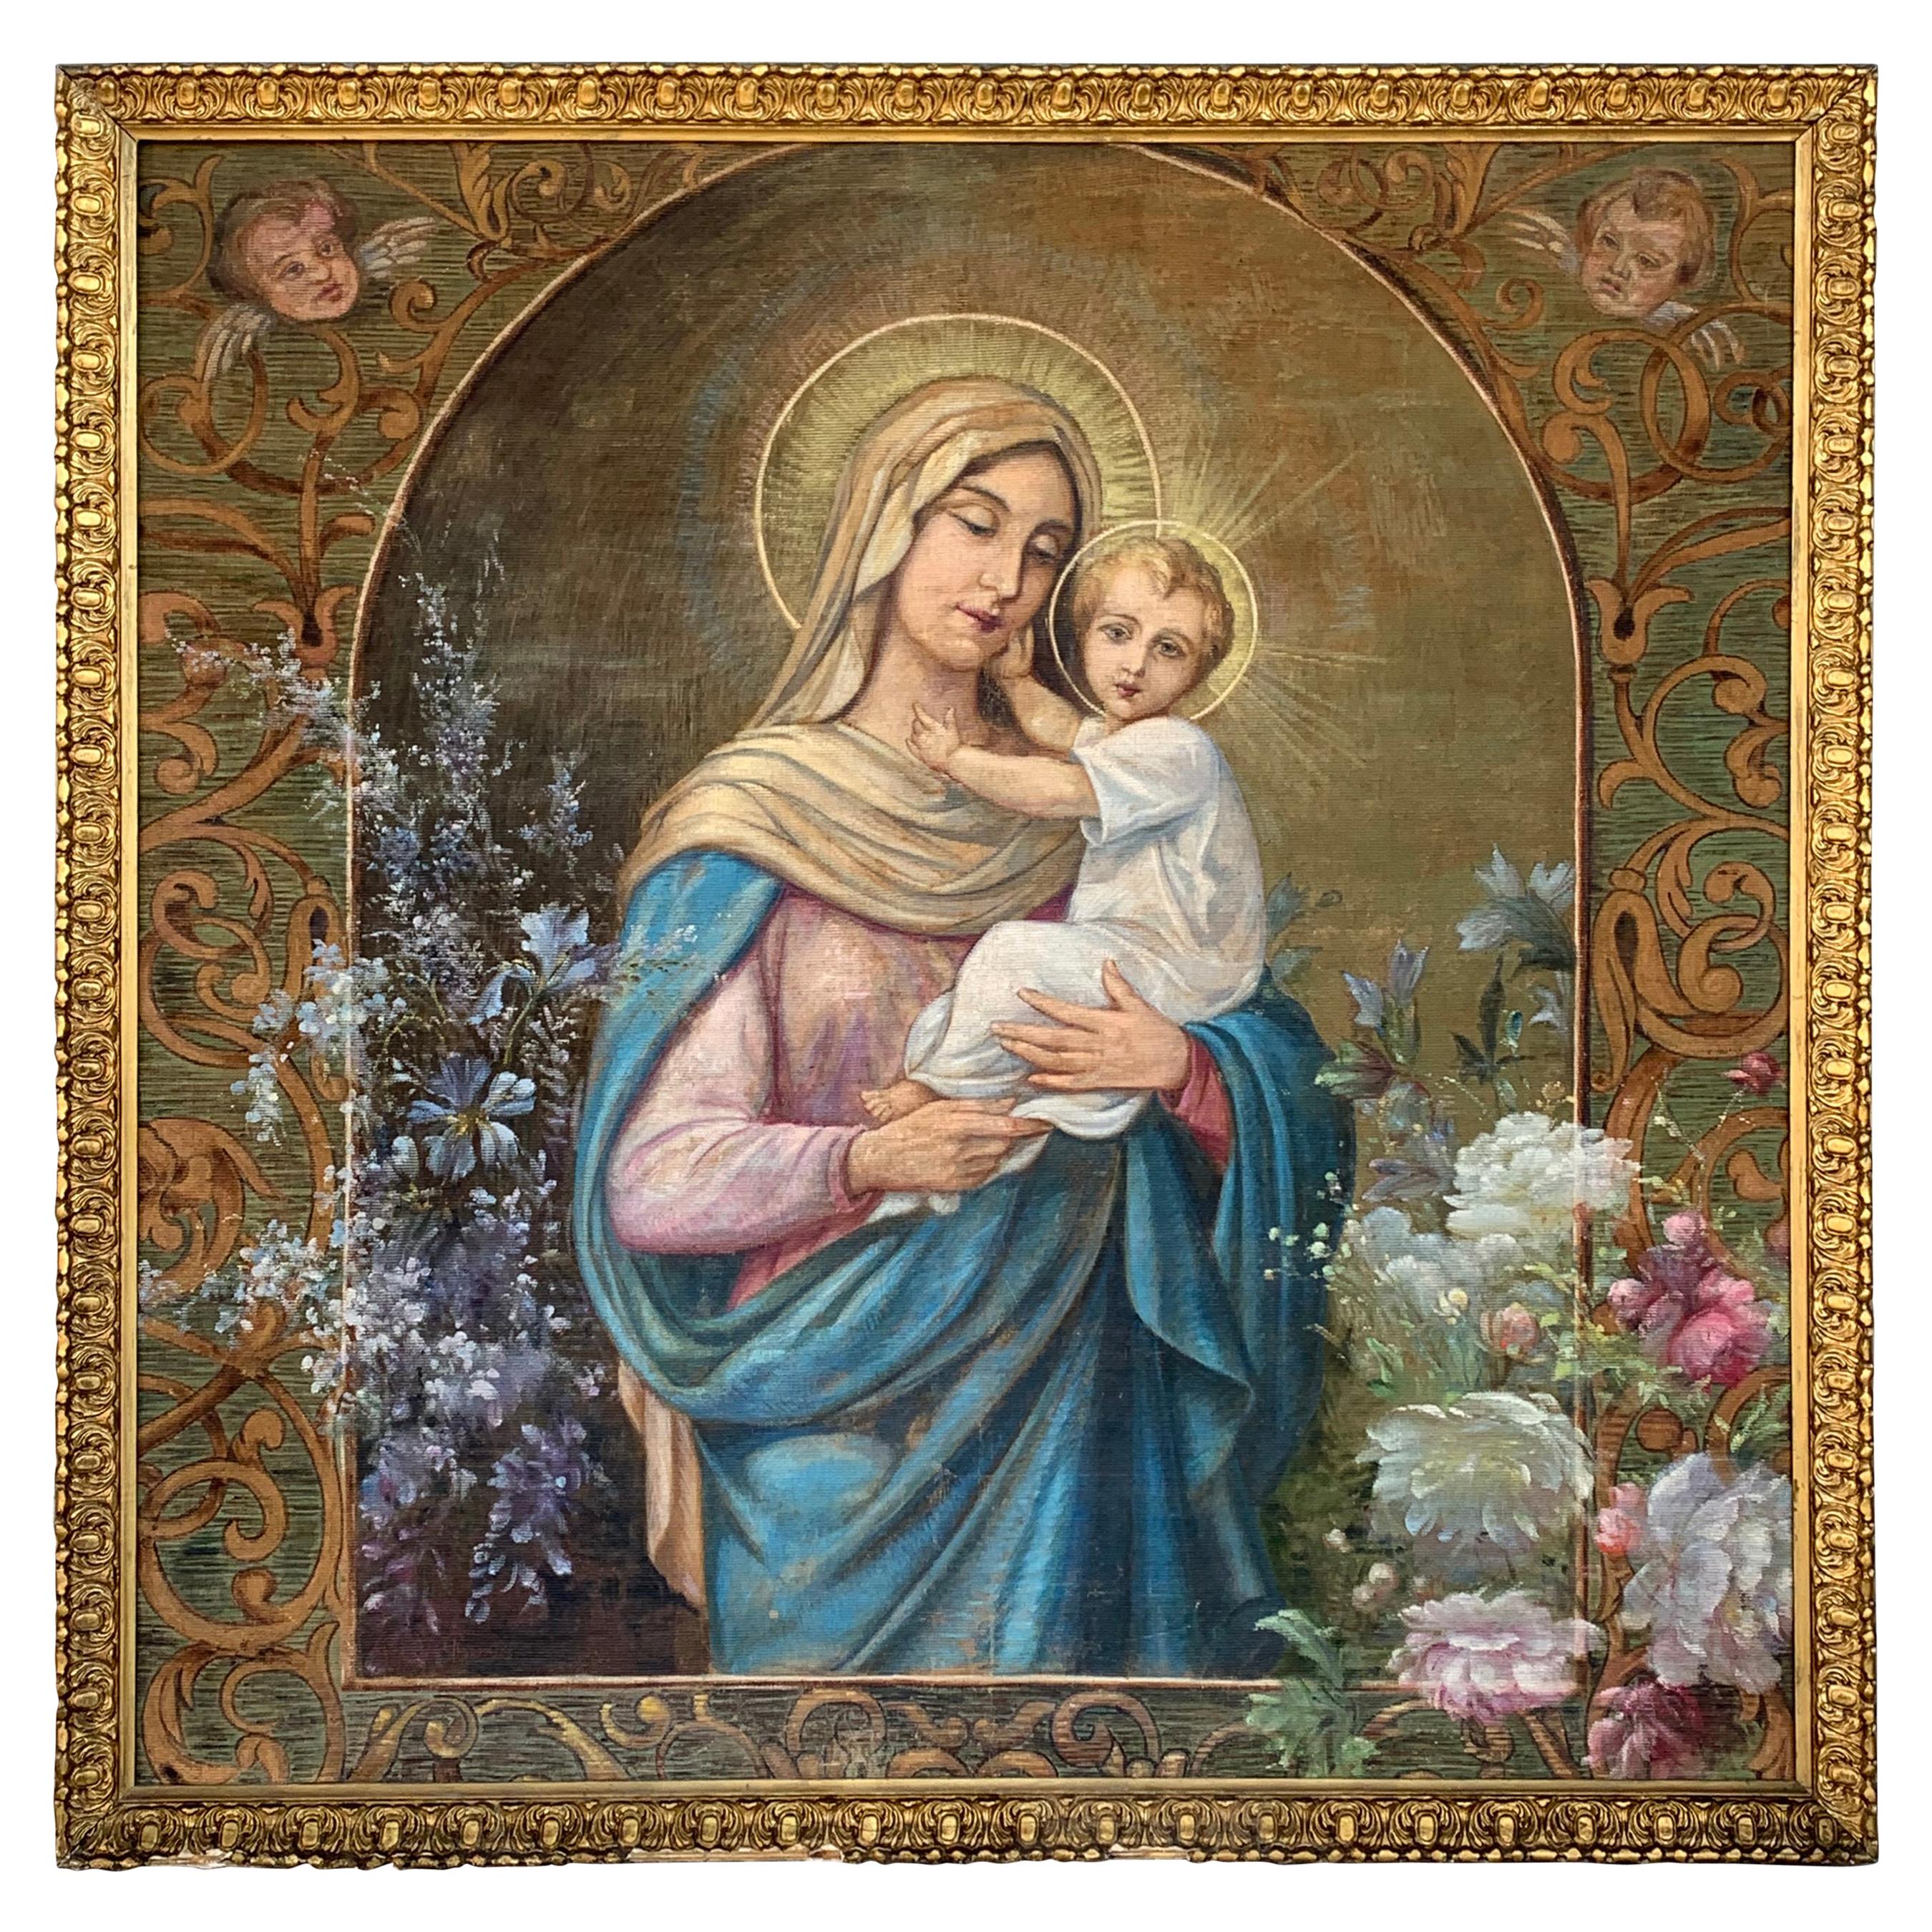 Handbemalter Wandteppich aus dem 19. Jahrhundert, der Madonna mit einem Kind darstellt